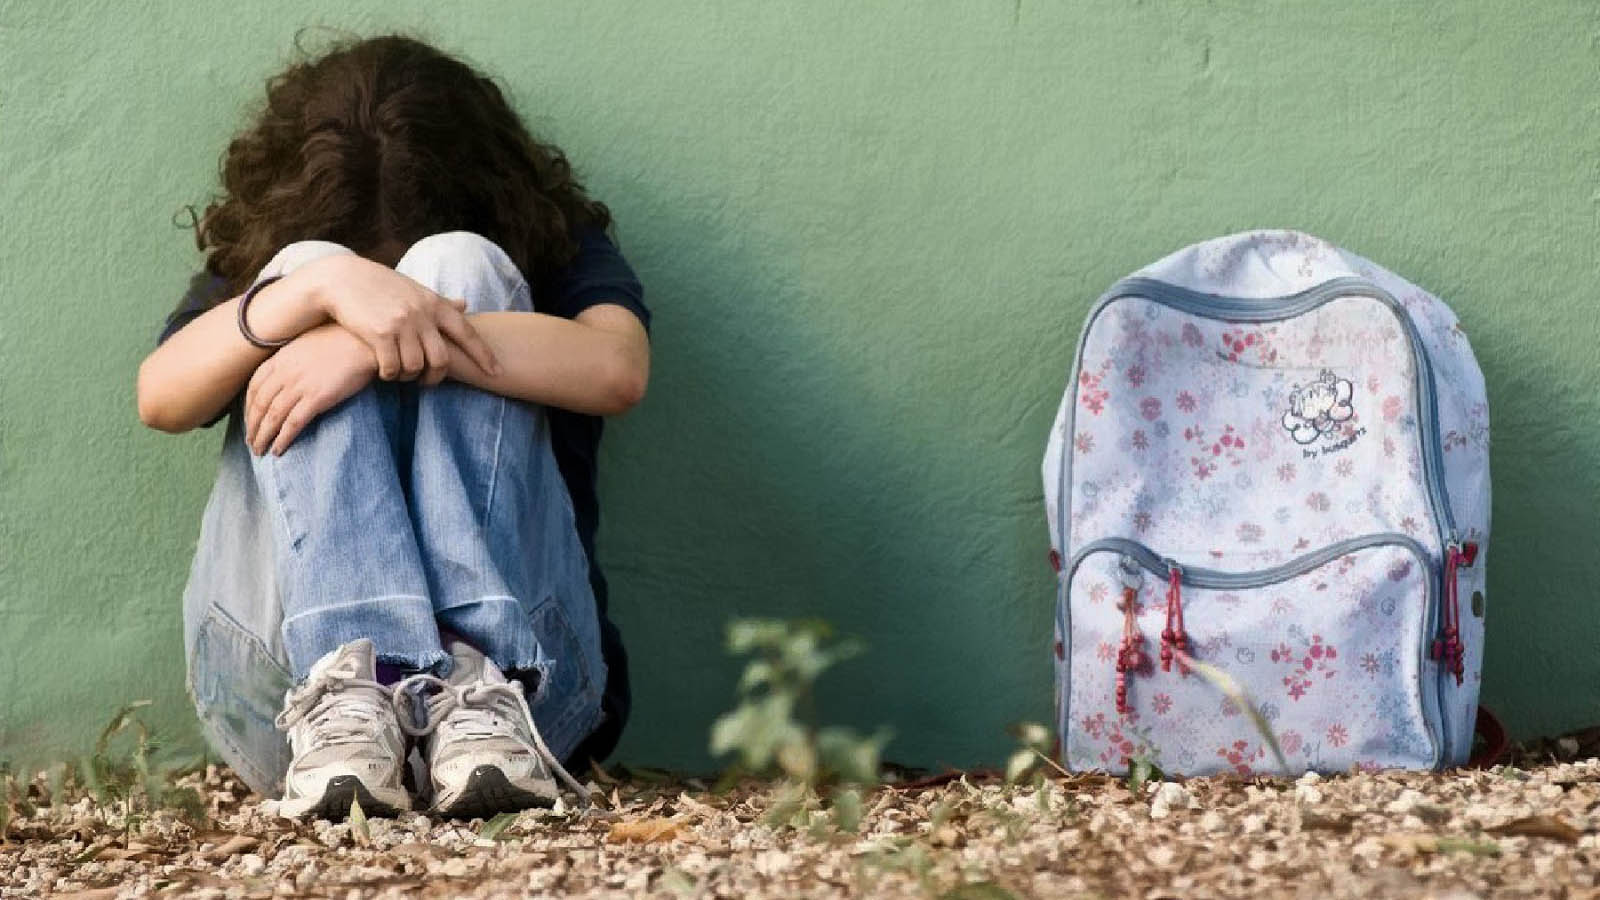 Doble Llave - Venezolana fue víctima de bullying en escuela de Miami